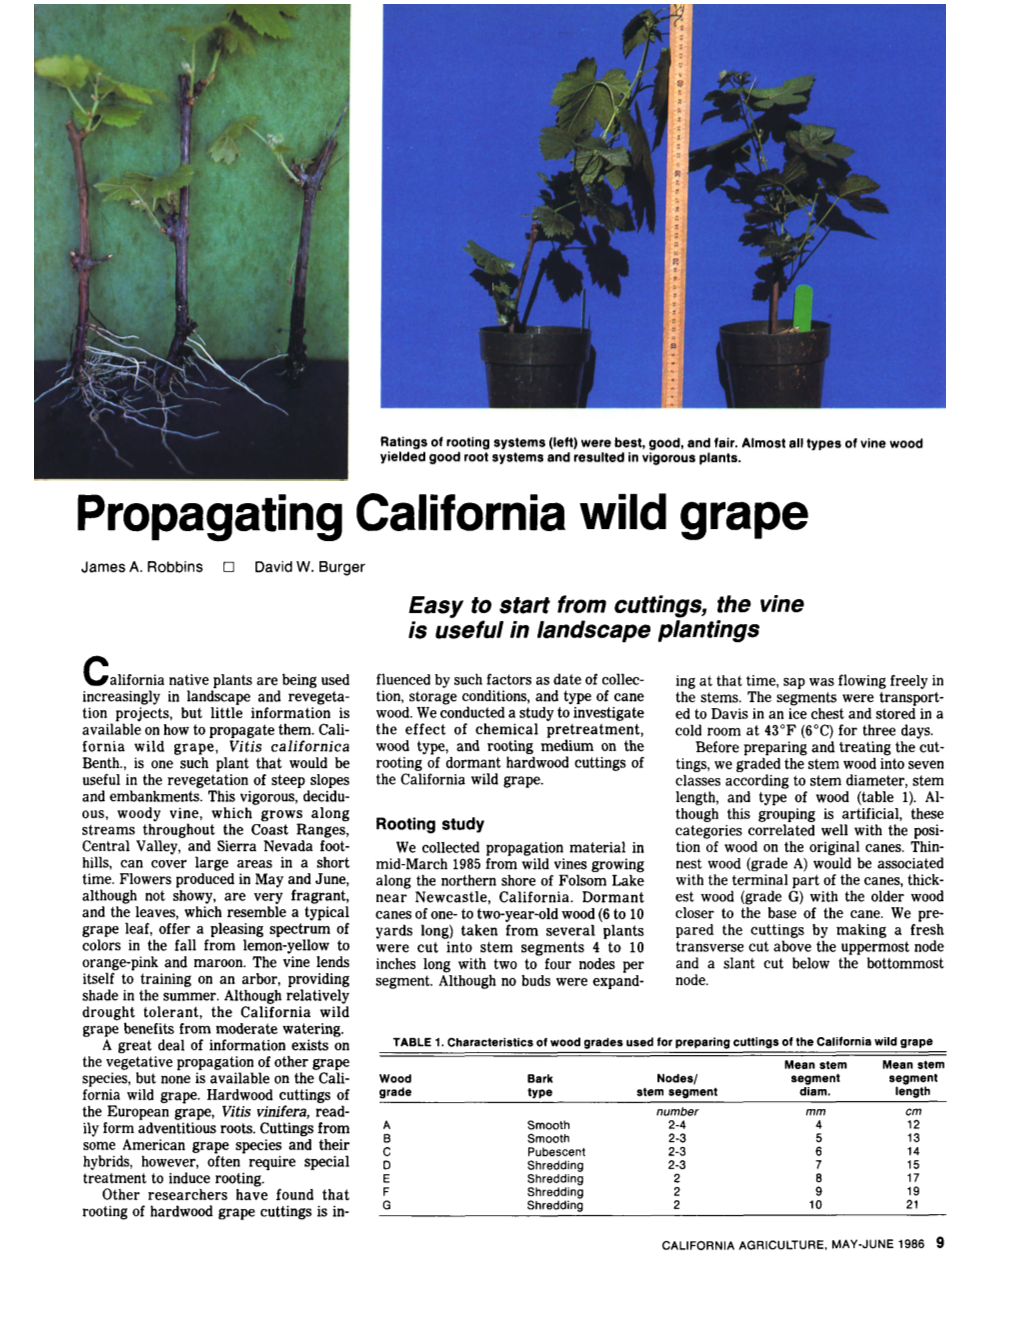 Propagating California Wild Grape